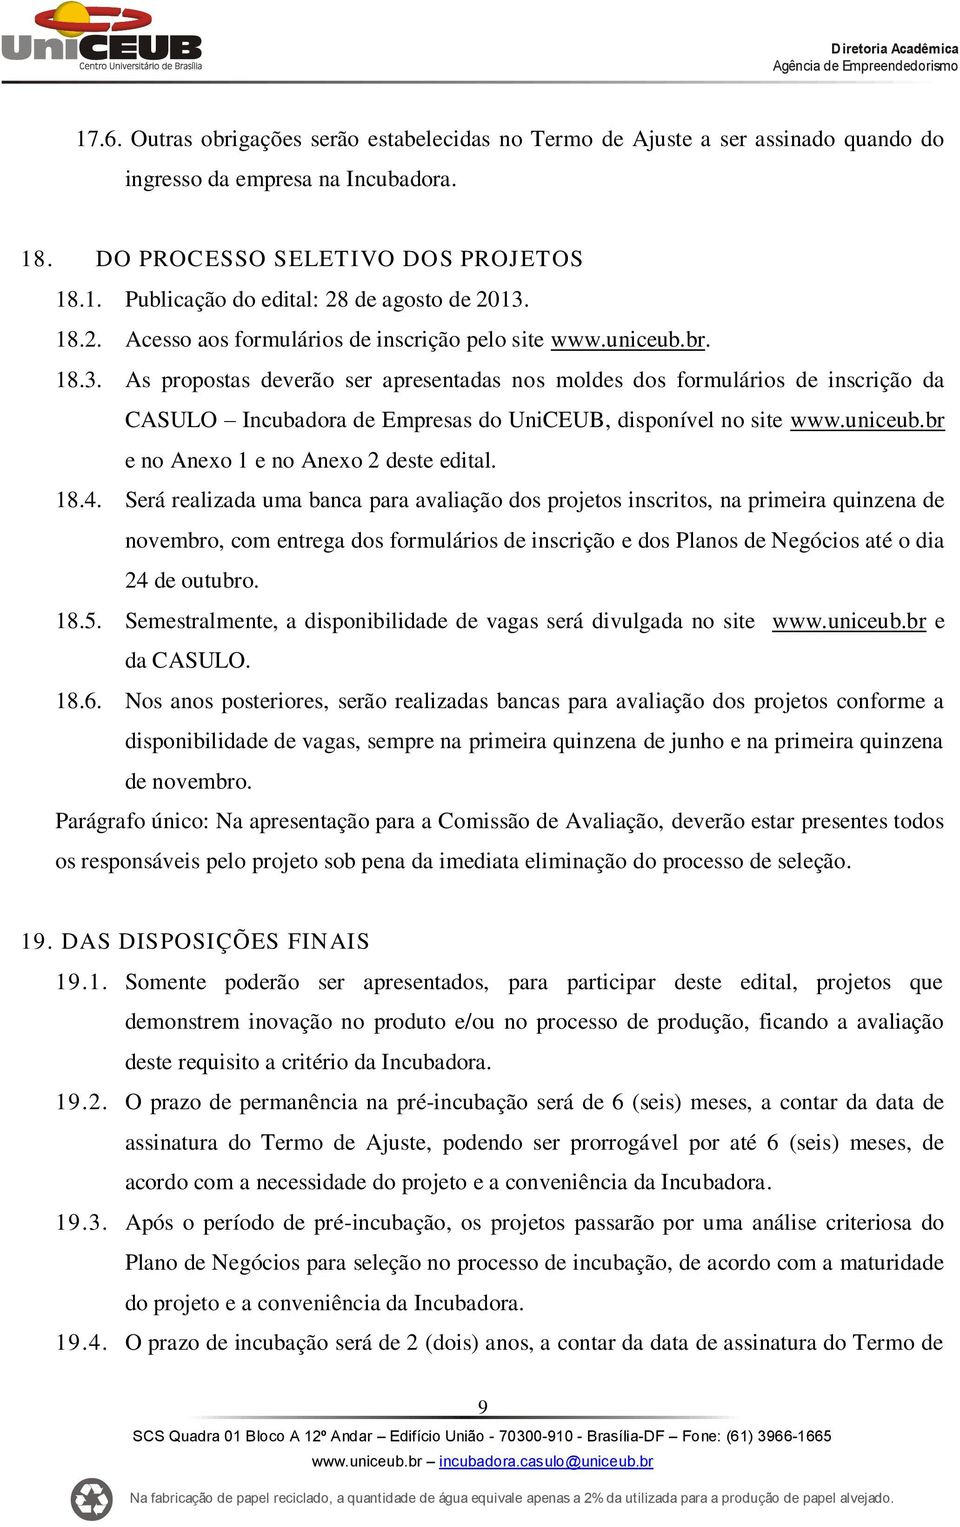 As propostas deverão ser apresentadas nos moldes dos formulários de inscrição da CASULO Incubadora de Empresas do UniCEUB, disponível no site www.uniceub.br e no Anexo 1 e no Anexo 2 deste edital. 18.